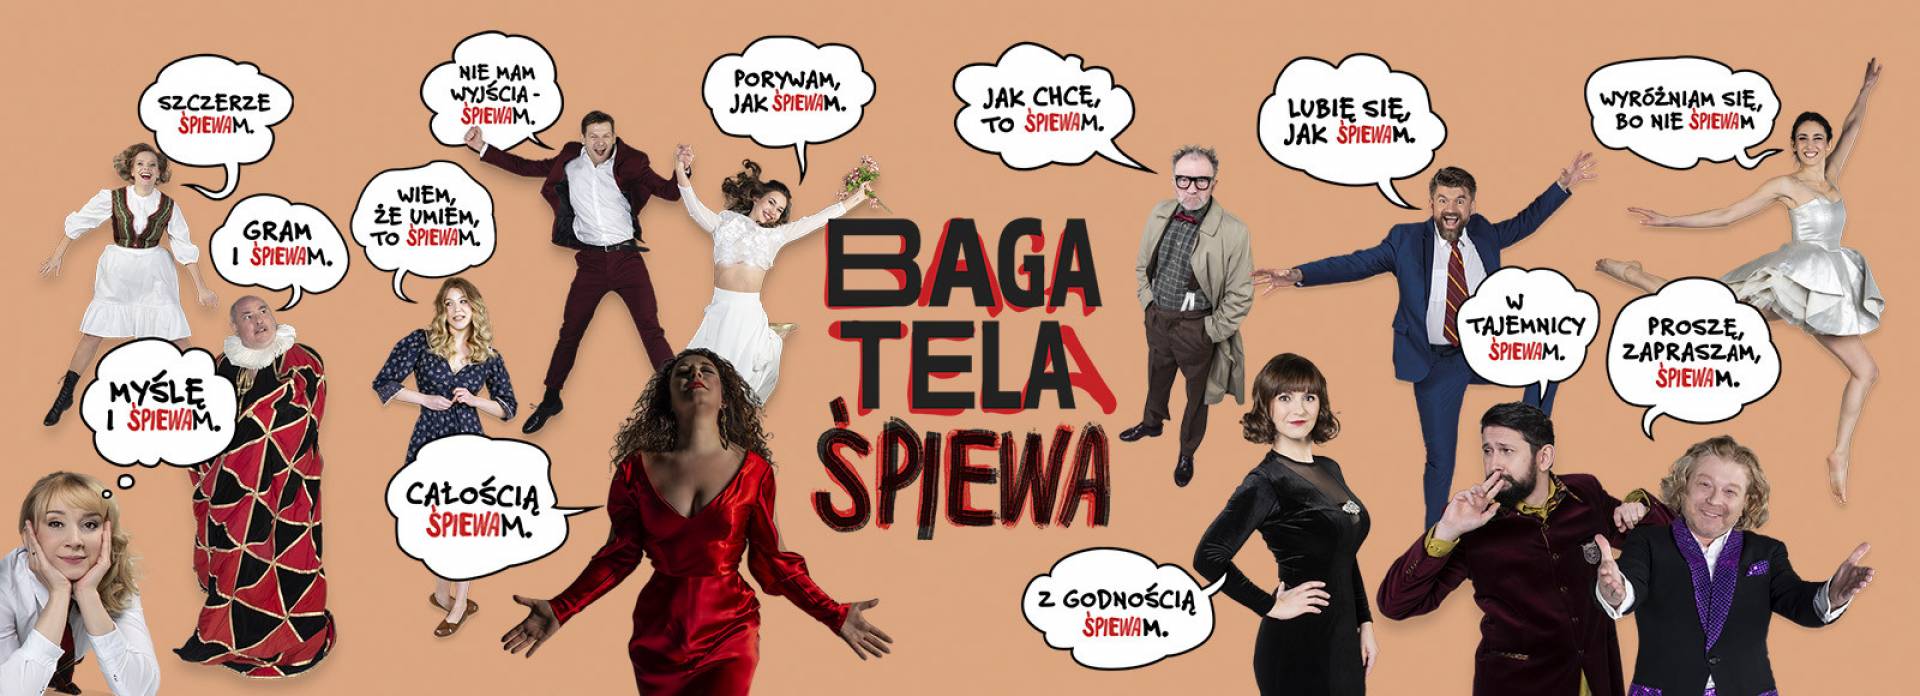 Bagatela śpiewa - spektakl w reżyserii Krzysztofa Materny